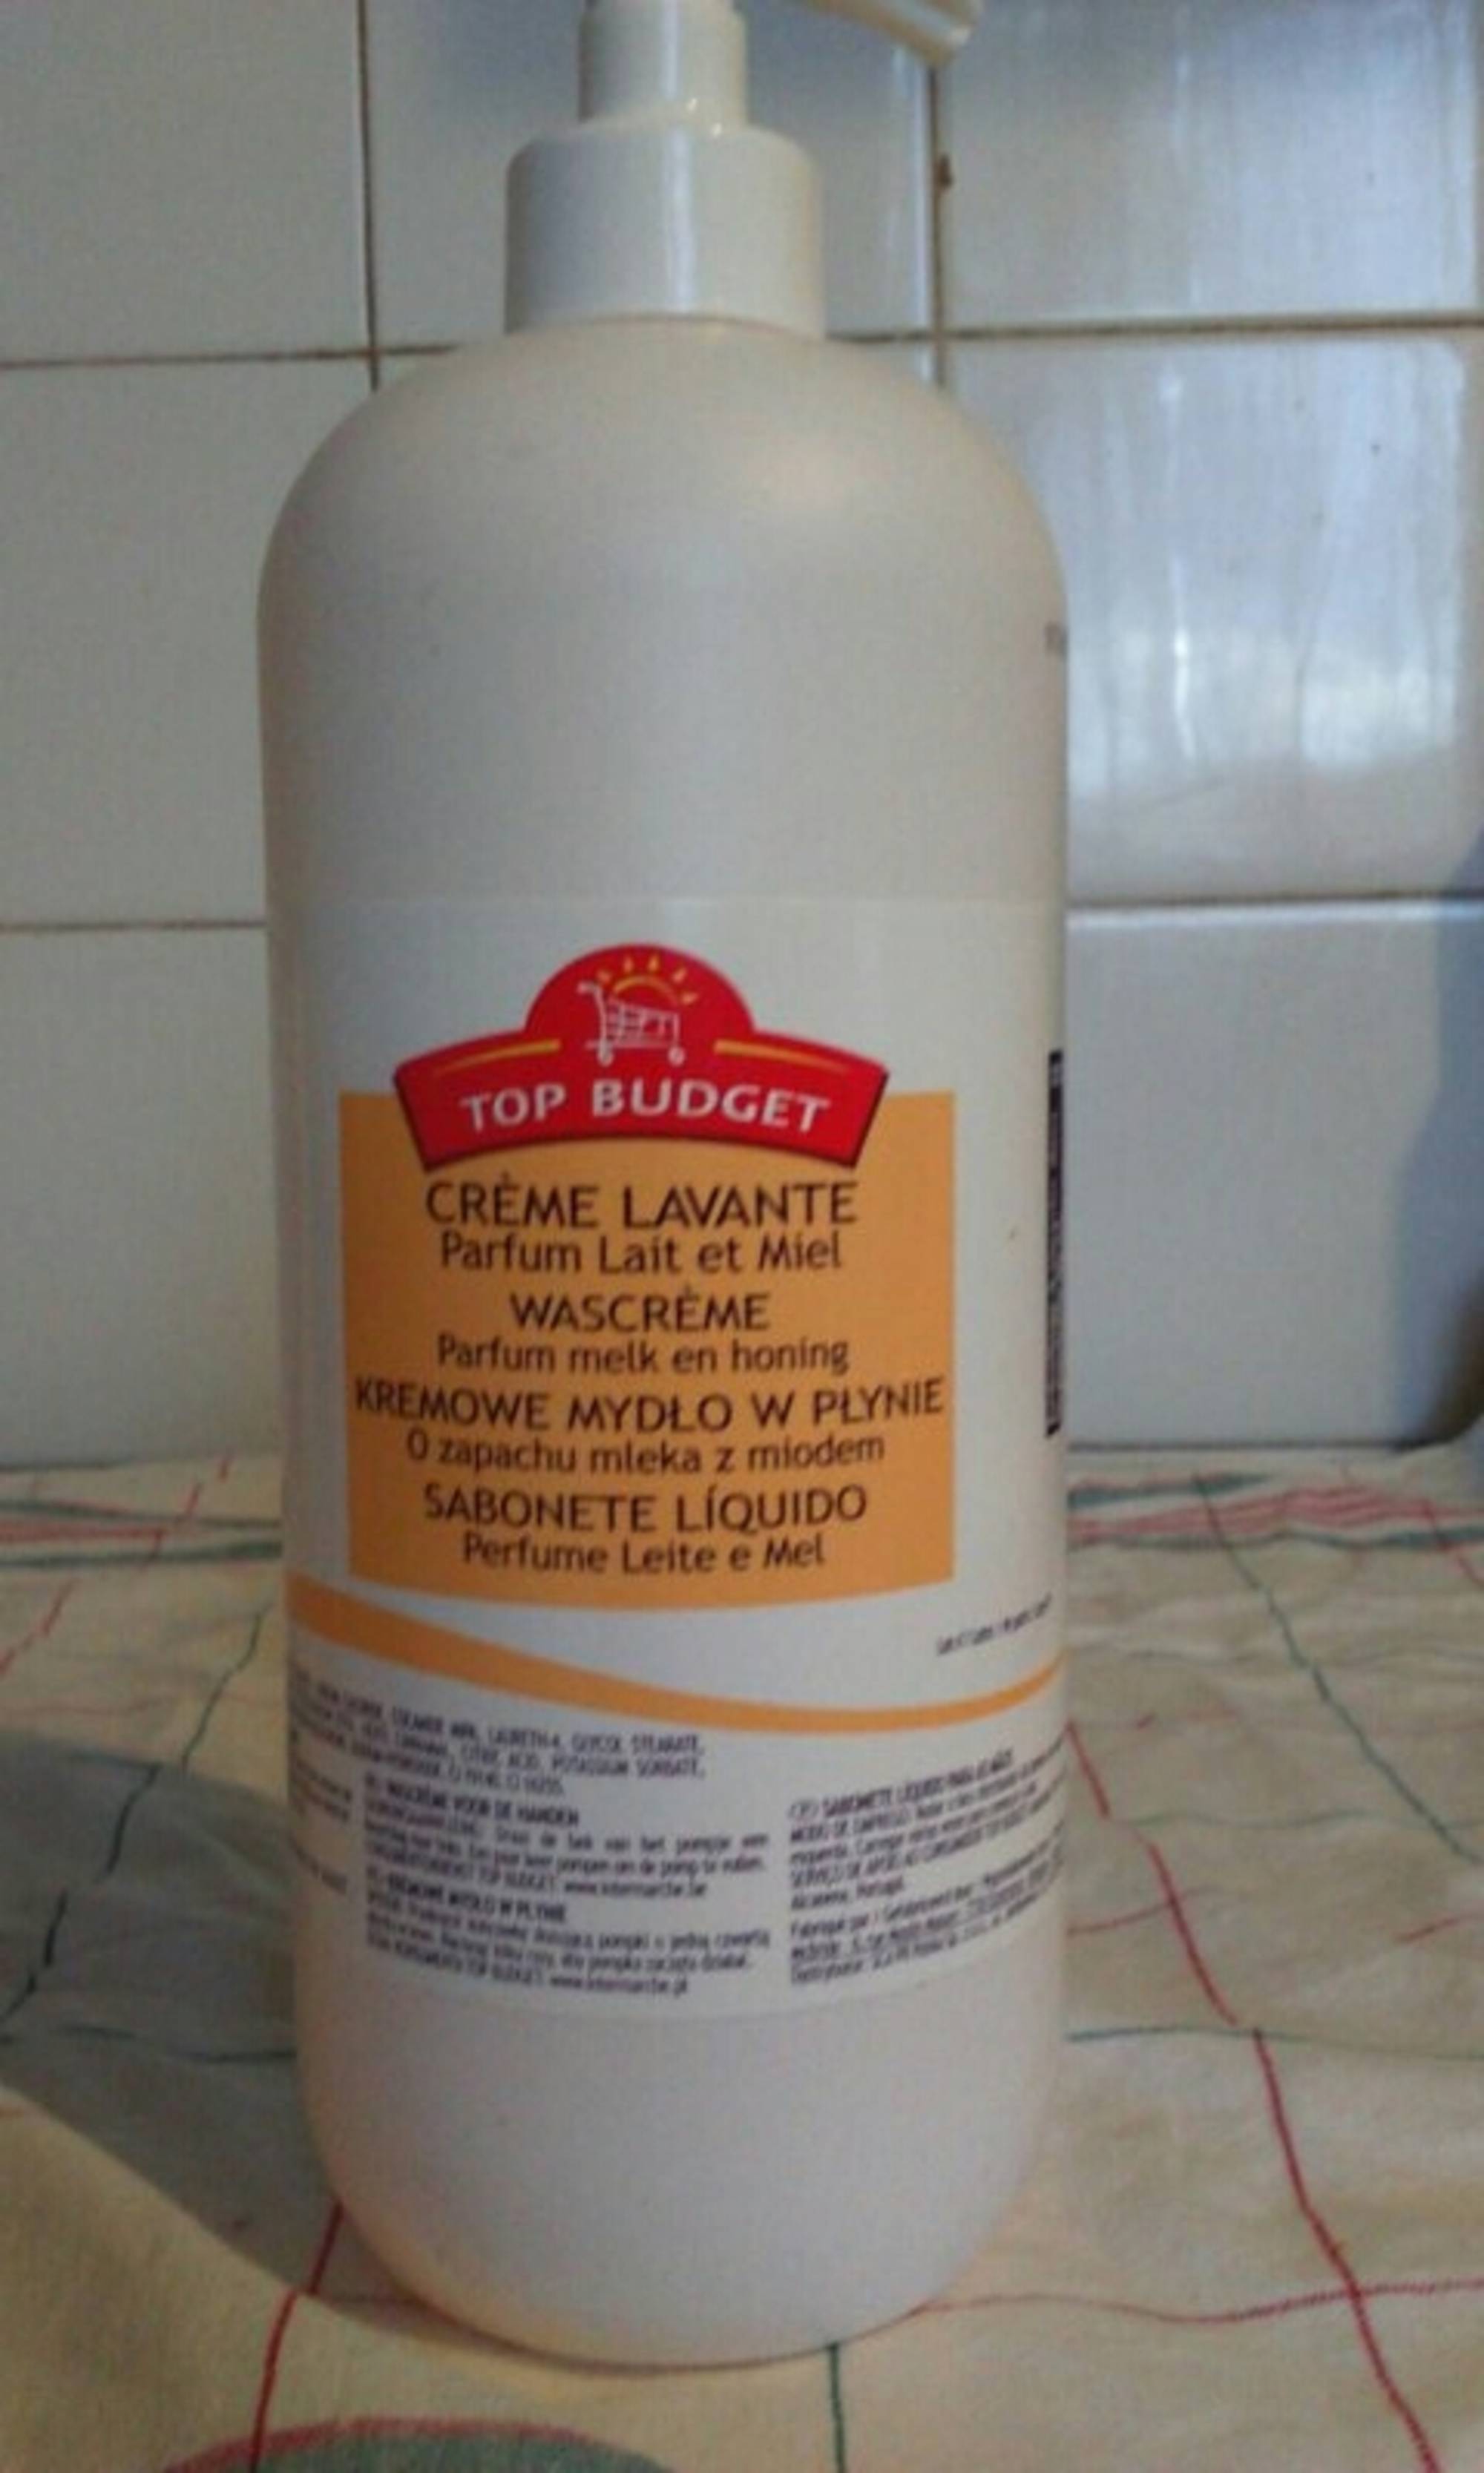 INTERMARCHÉ TOP BUDGET - Crème lavante parfum lait et miel